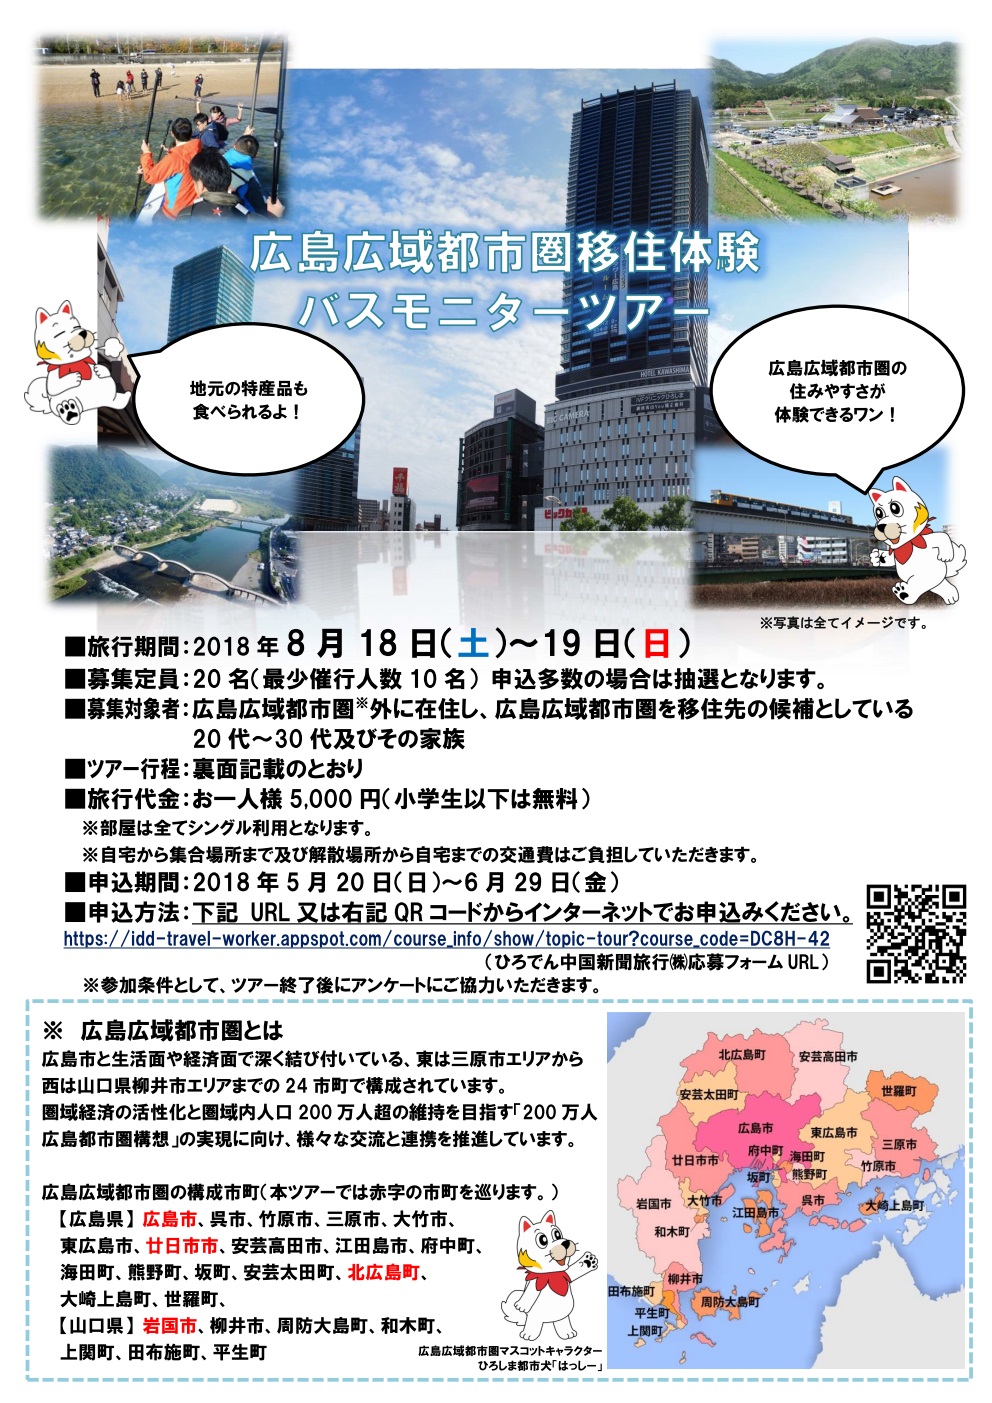 広島広域都市圏移住体験  バスモニターツアー | 移住関連イベント情報